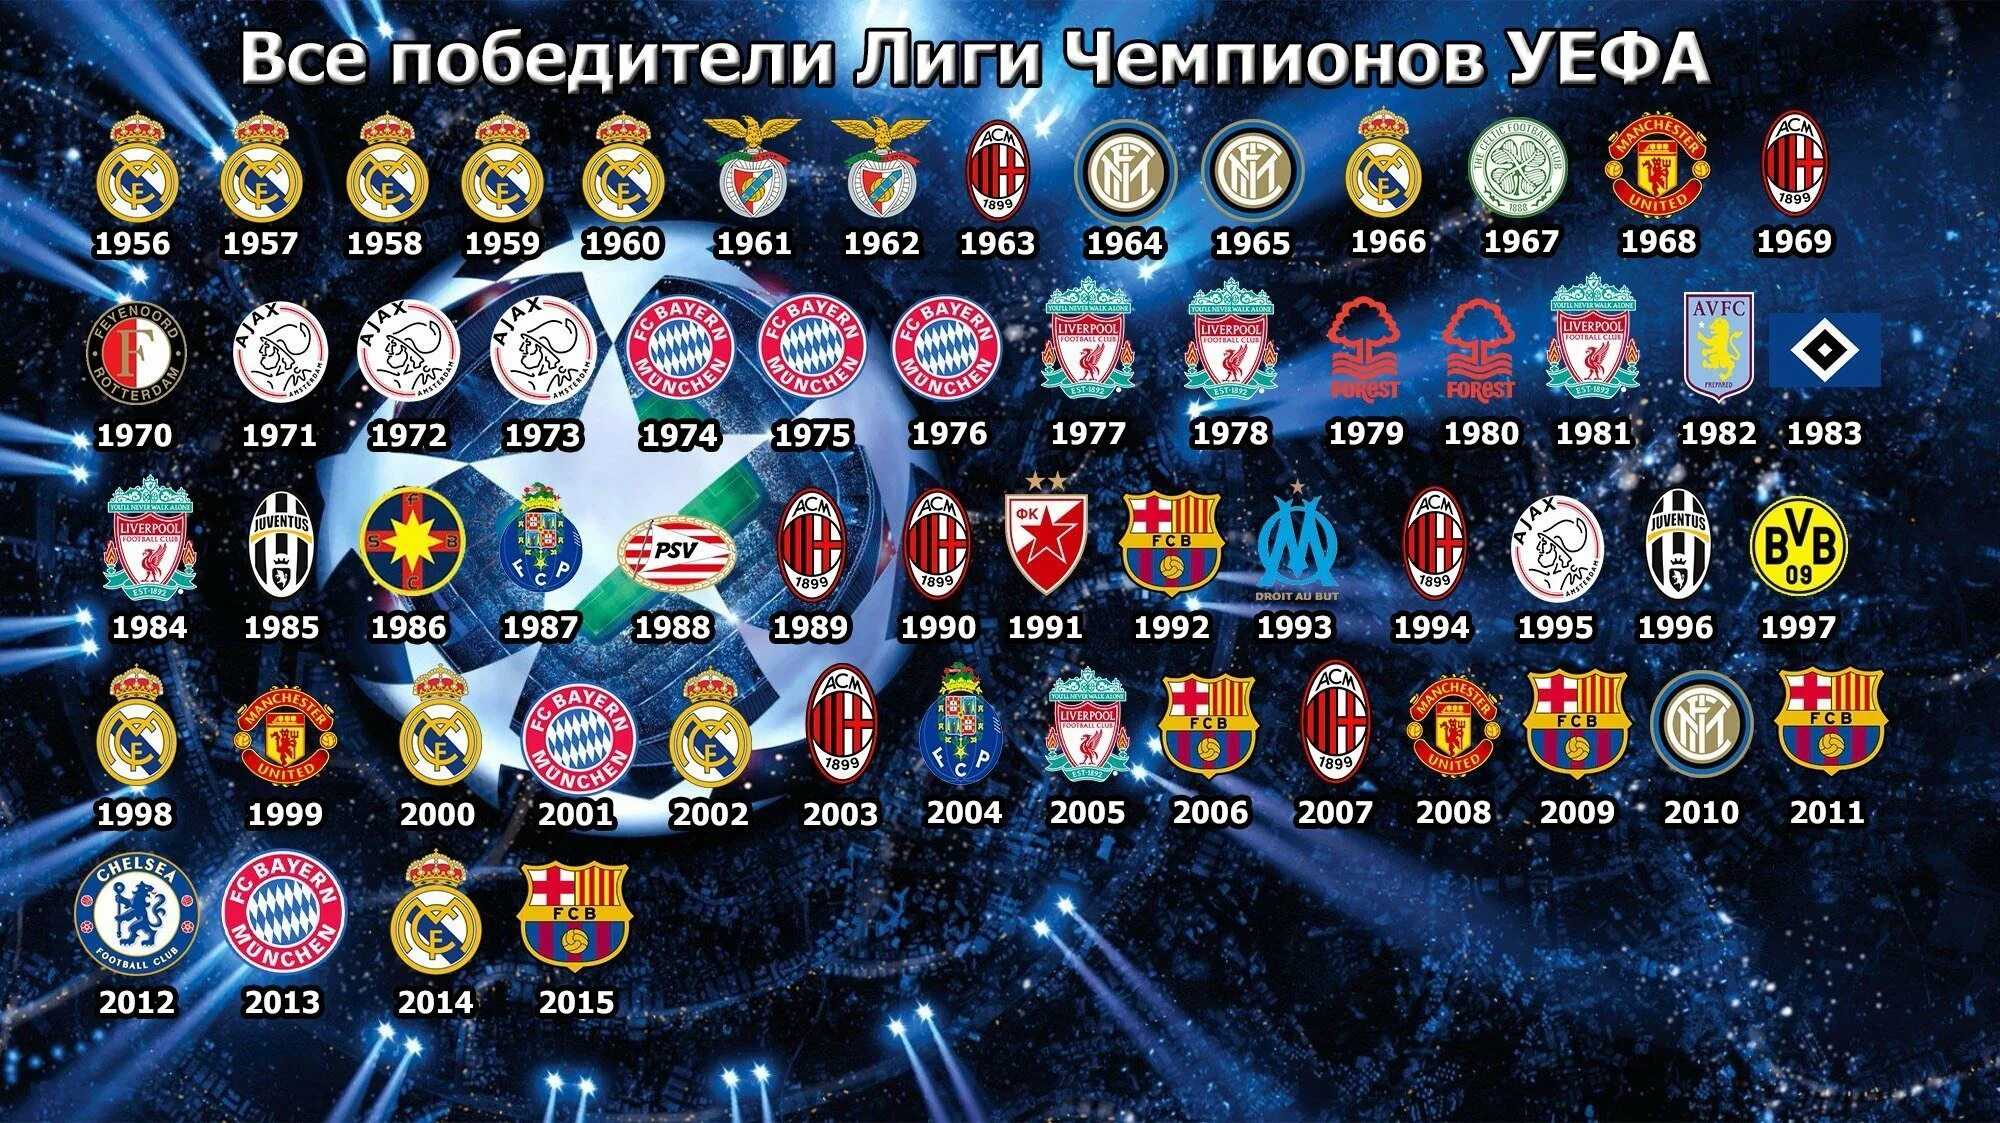 Таблица победителей Лиги чемпионов. Чемпионы Лиги чемпионов по годам таблица. Таблица победителей Лиги чемпионов с 2000 года. Победители Лиги чемпионов по годам таблица 2021.